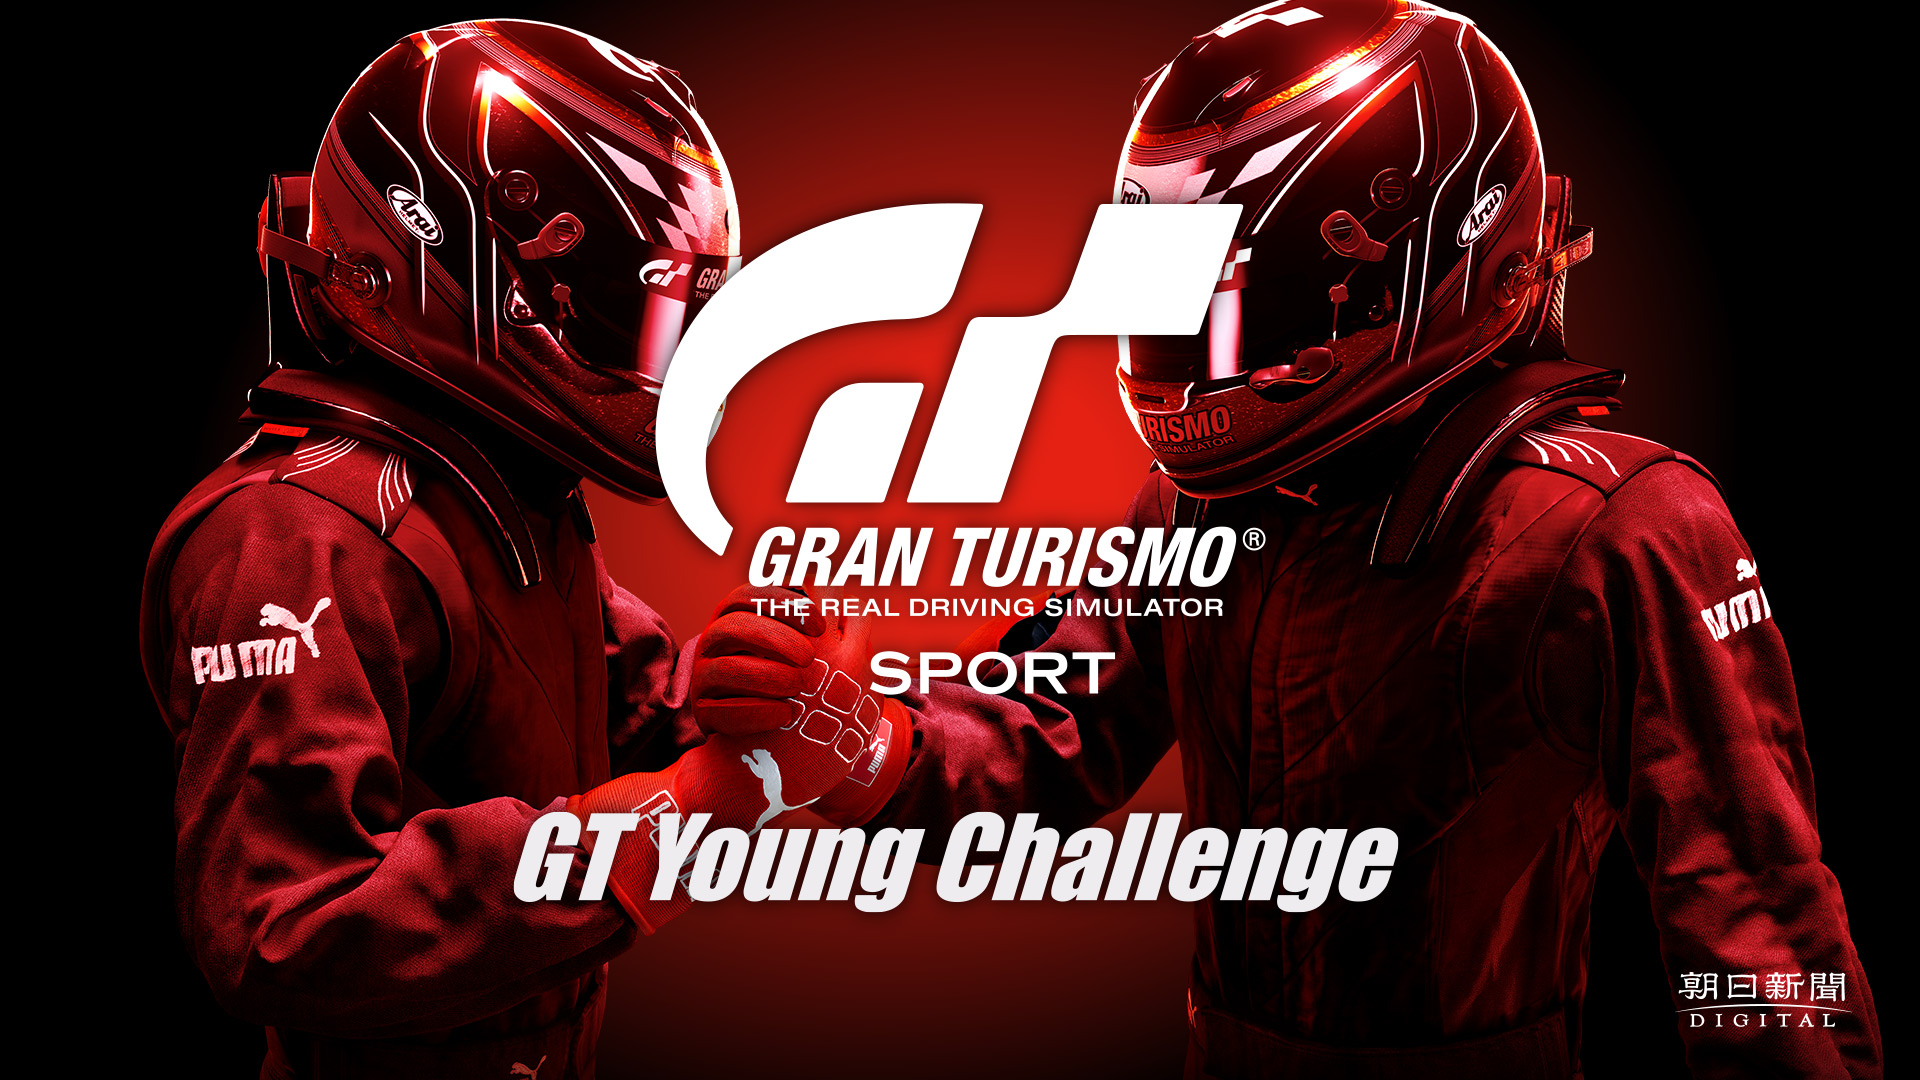 全10大学の頂点を決める Gt Young Challenge 開催 グランツーリスモ ドットコム